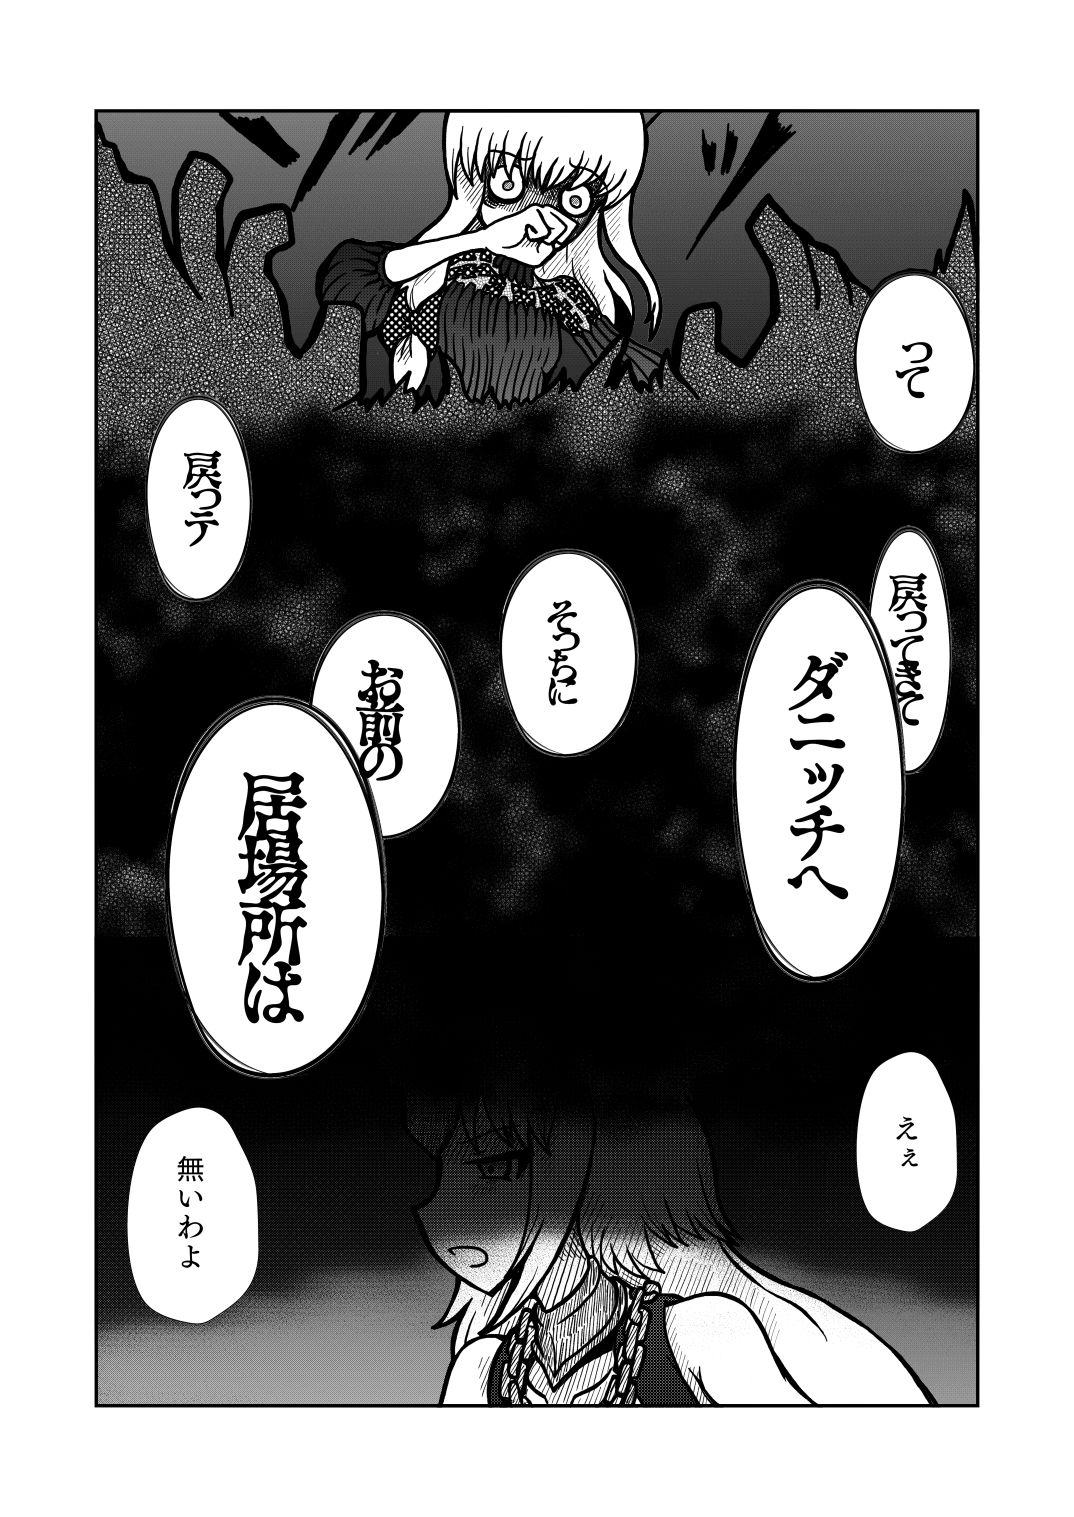 [Shigato] Jeanne x Lavi Dunwich Kai Kikou (Fate/Grand Order, Cthulhu Mythos) [Digital] 28